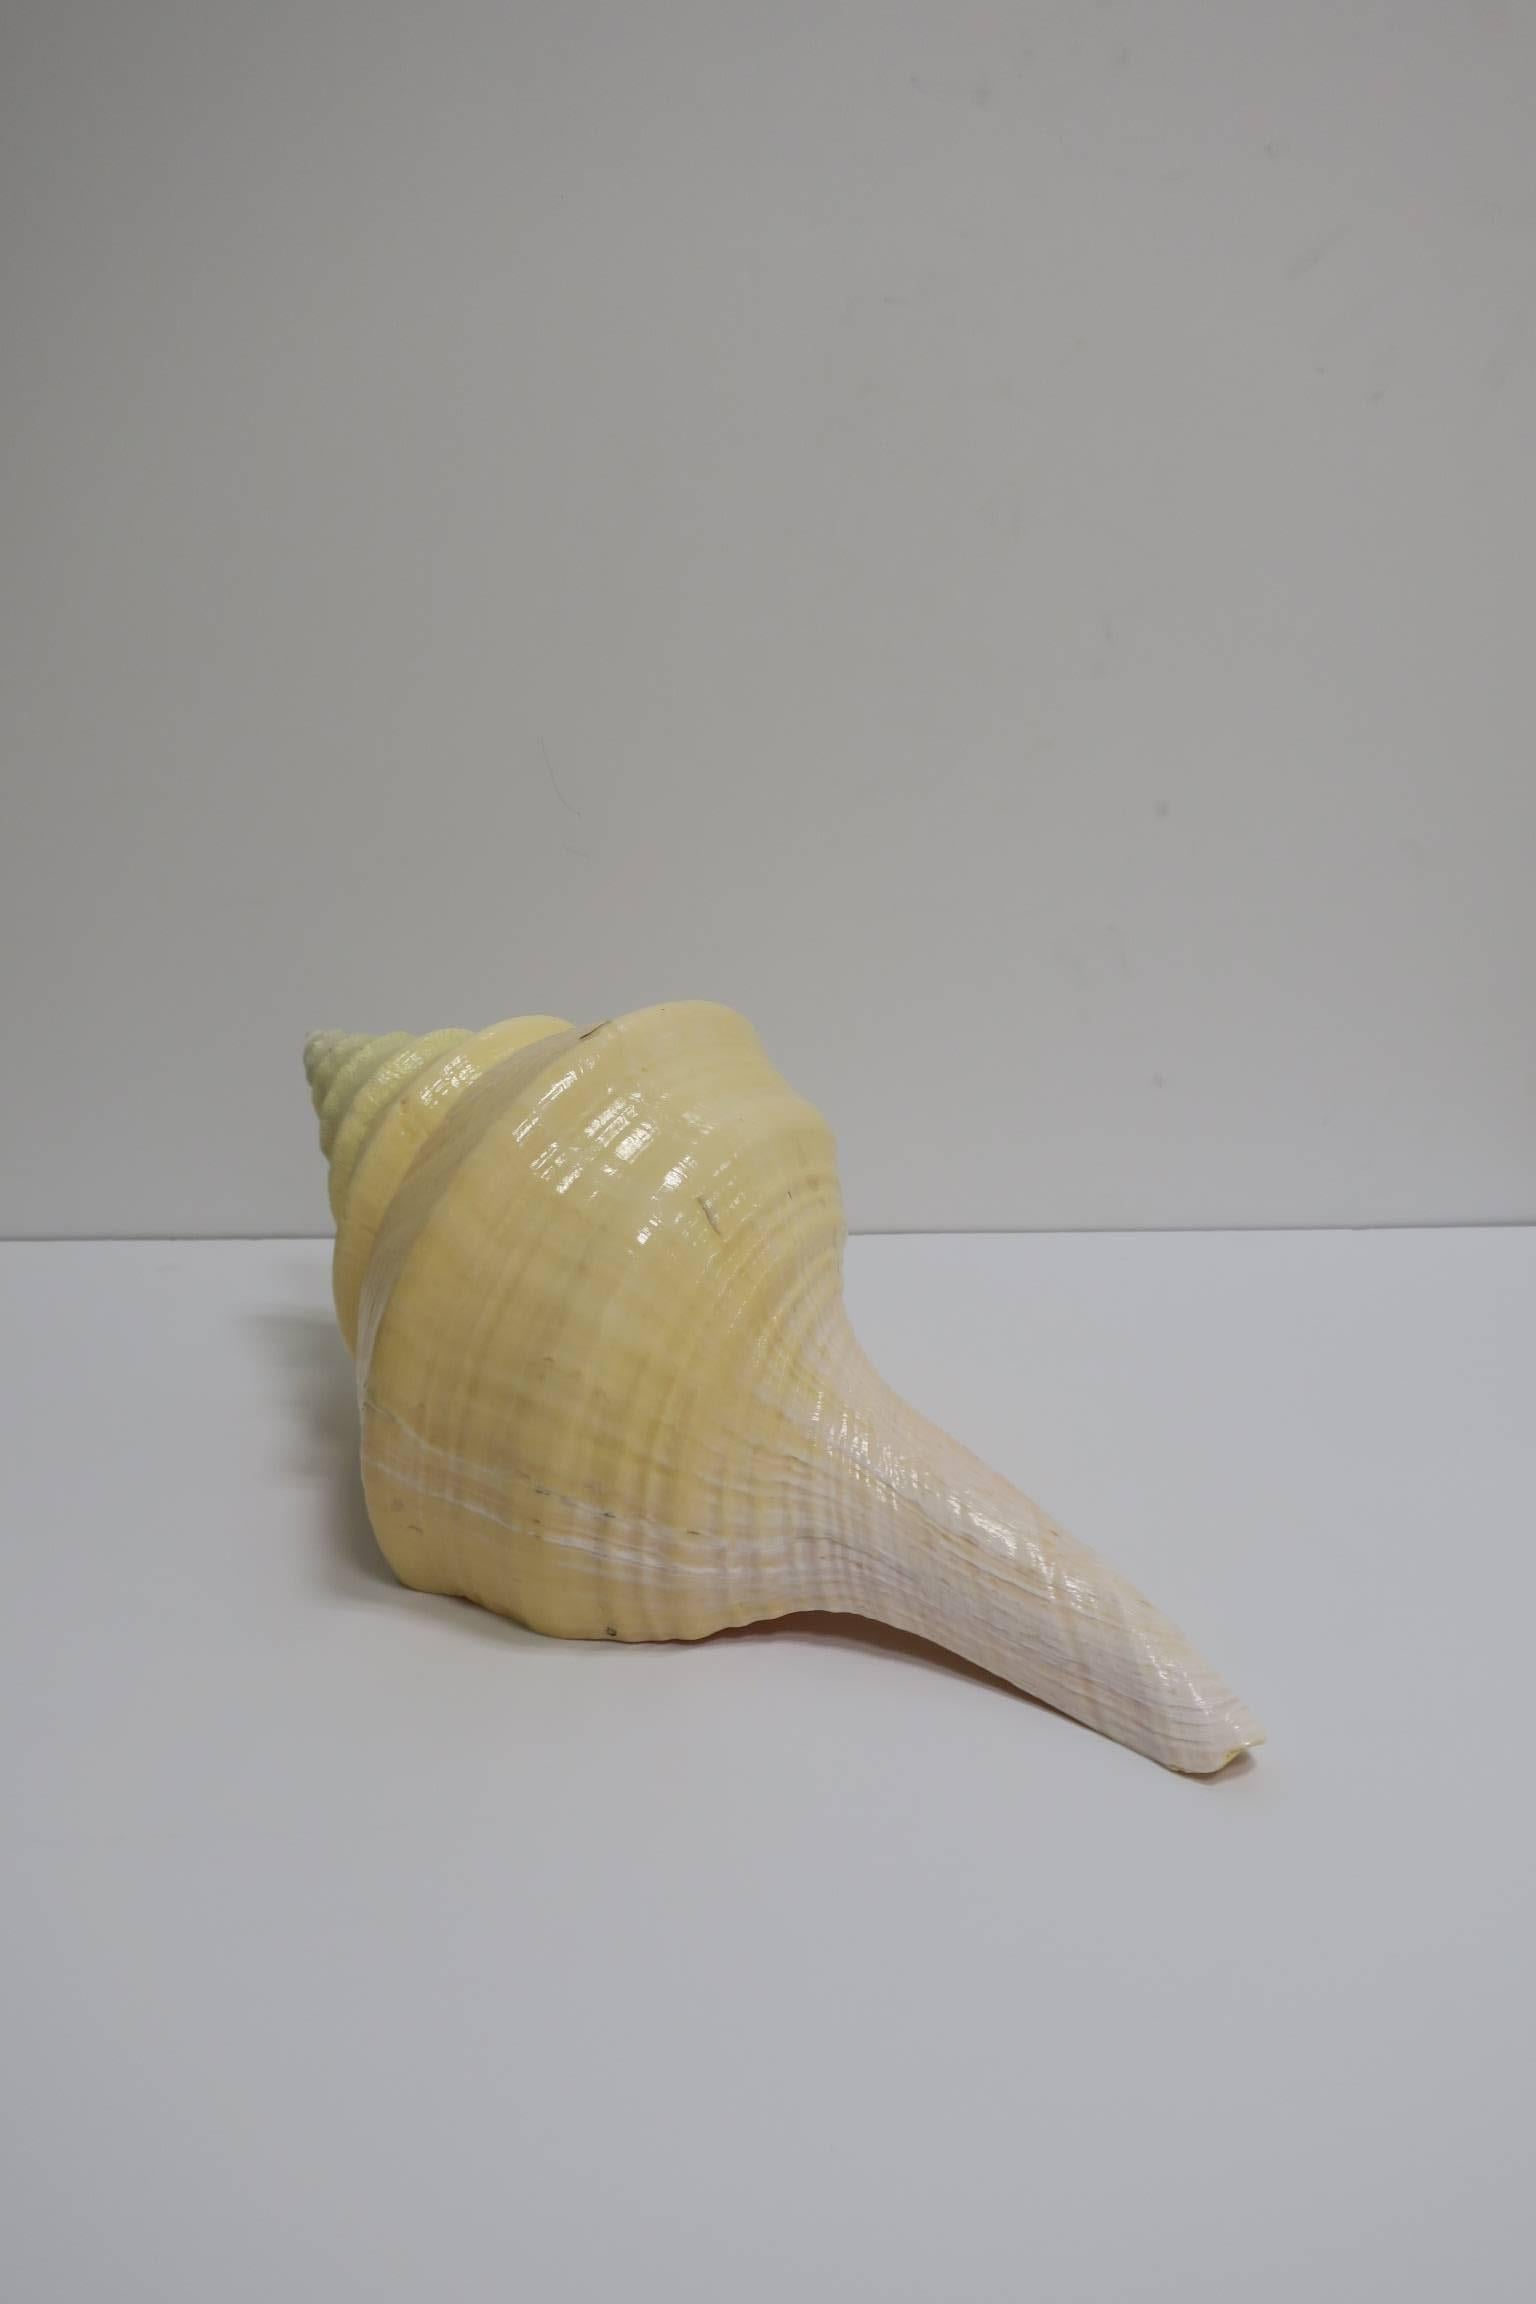 Large Vintage Seashell 1